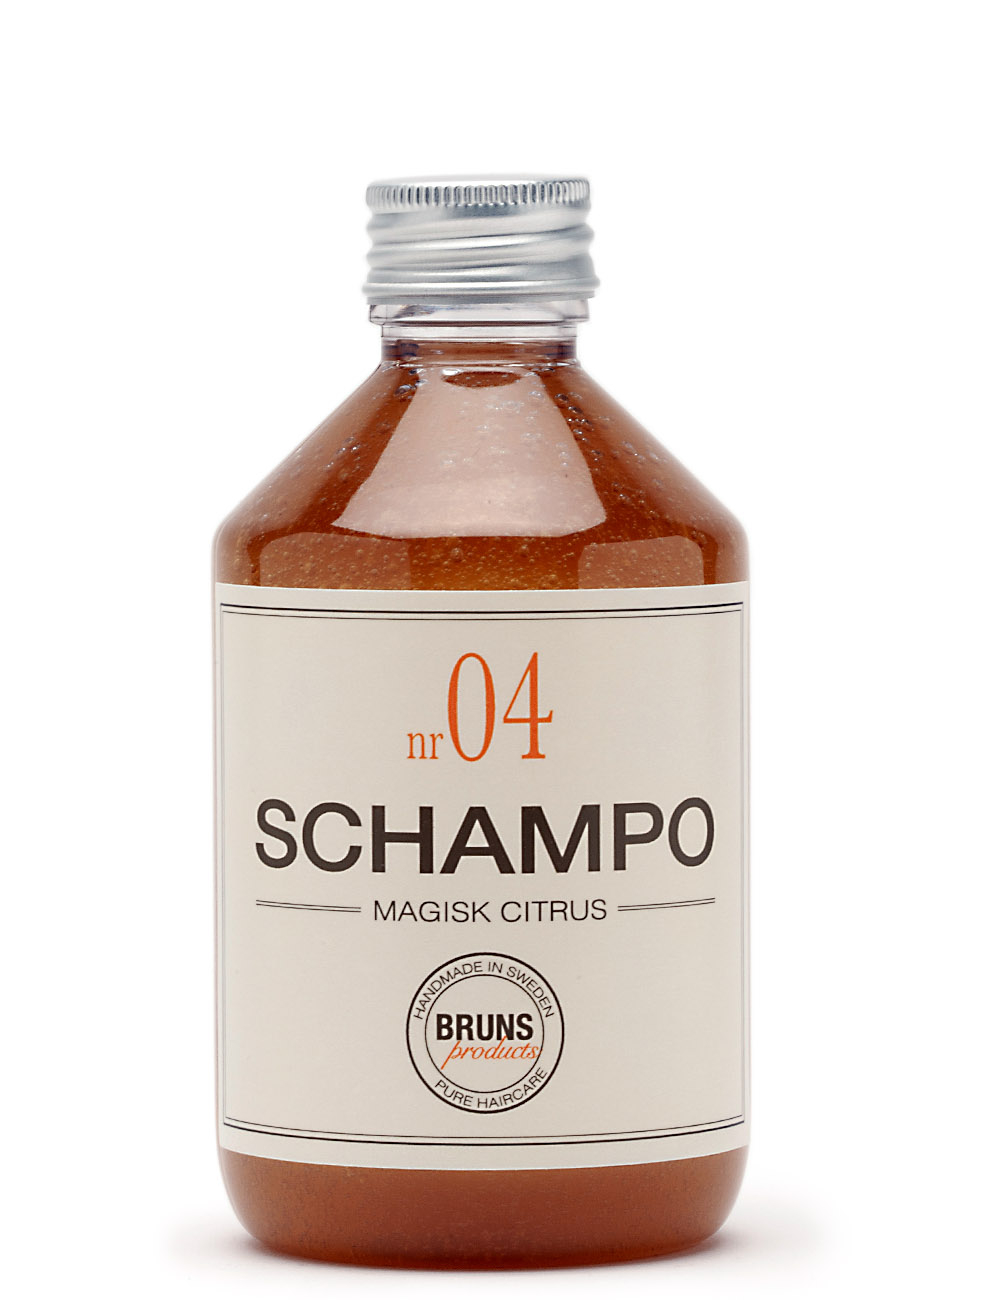 Billede af Bruns Nr. 04 Shampoo Magisk Citrus 330 ml.